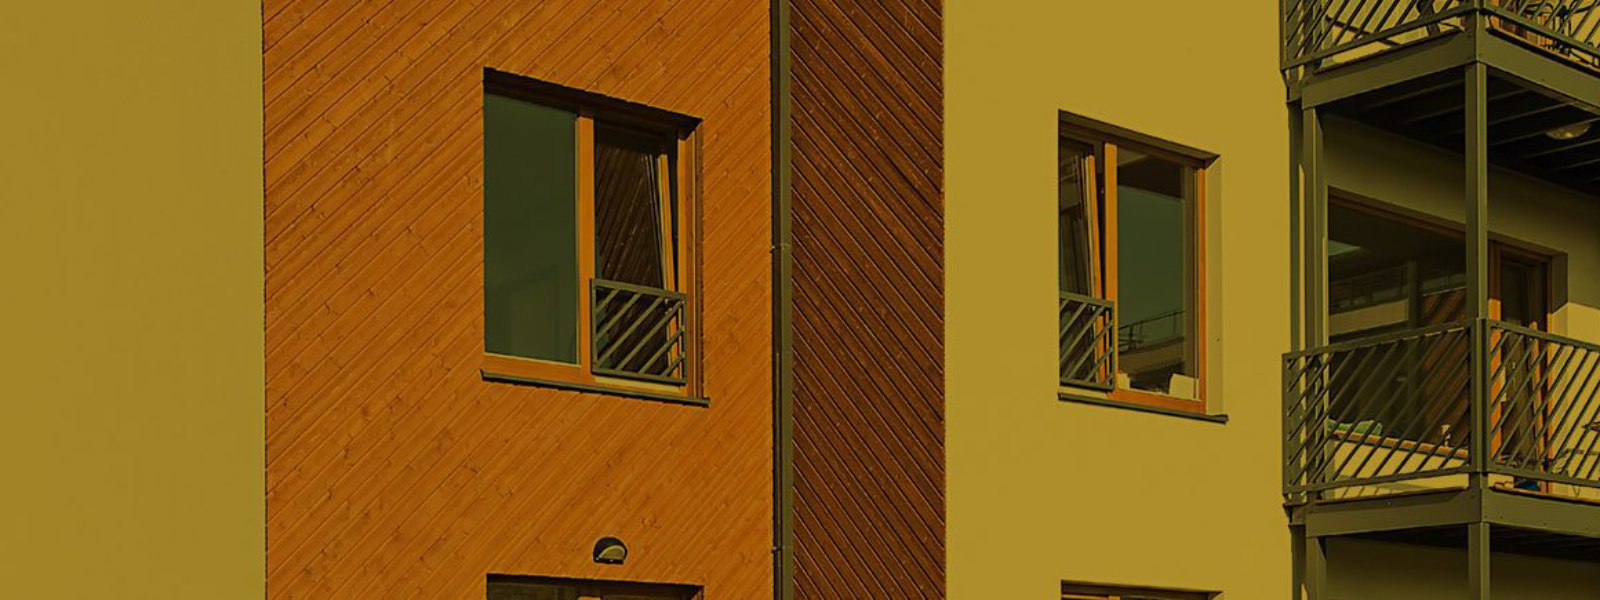 REHPOL AS - Wooden windows, Wooden aluminium windows, pvc windows, window accessories, wooden doors, wooden aluminium door...